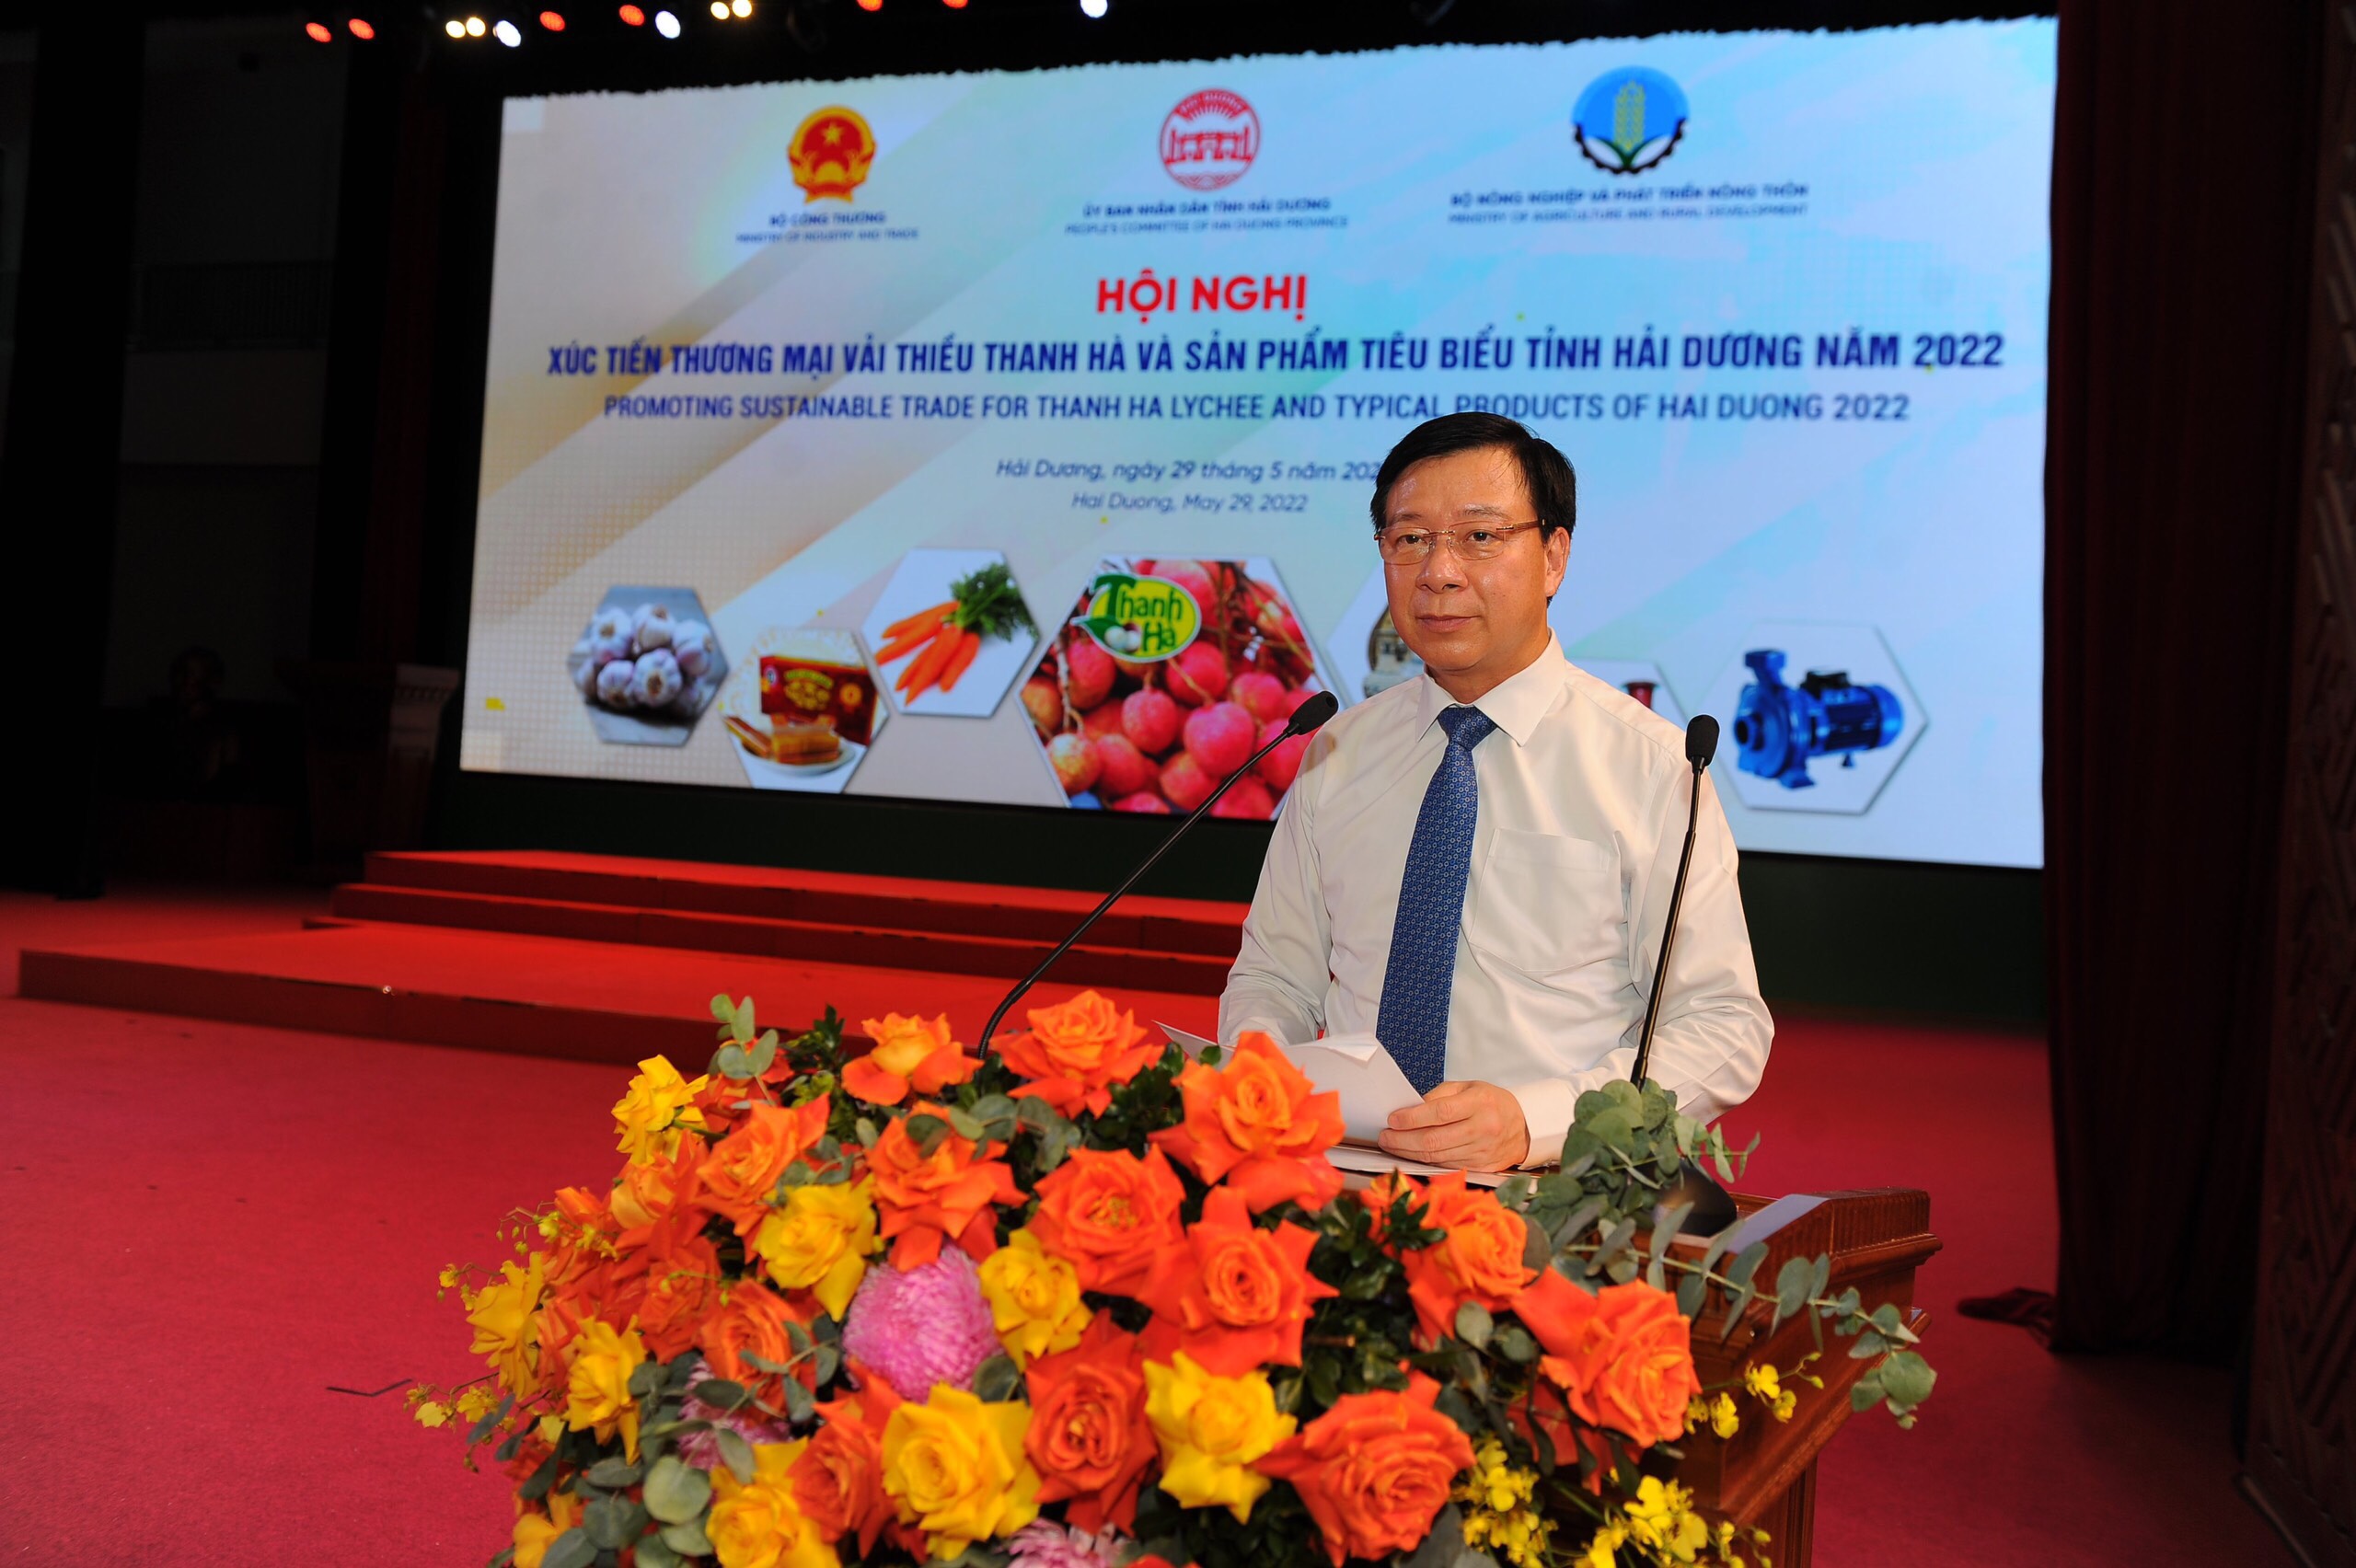 Ông Phạm Xuân Thăng – Ủy viên Trung ương Đảng, Bí thư Tỉnh ủy Hải Dương phát biểu chào mừng